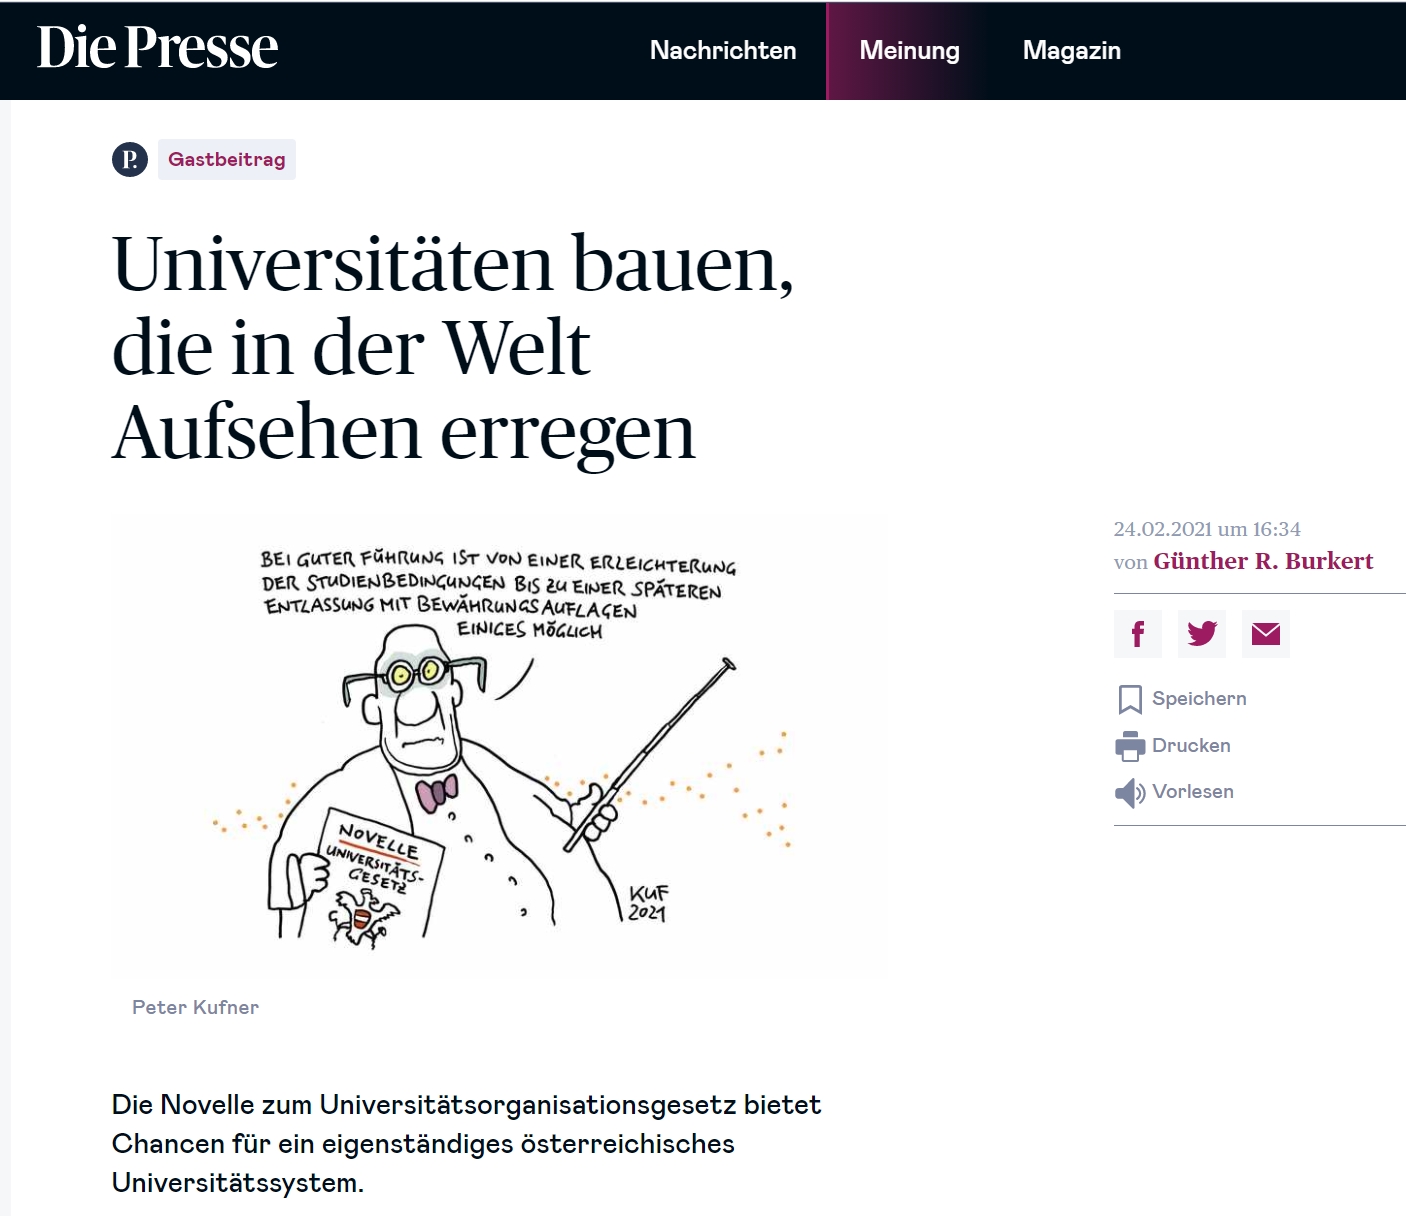 Univisiongovernance - Image - Article "Die Presse" - Universitäten Bauen, die in der Welt Aufsehen erregen